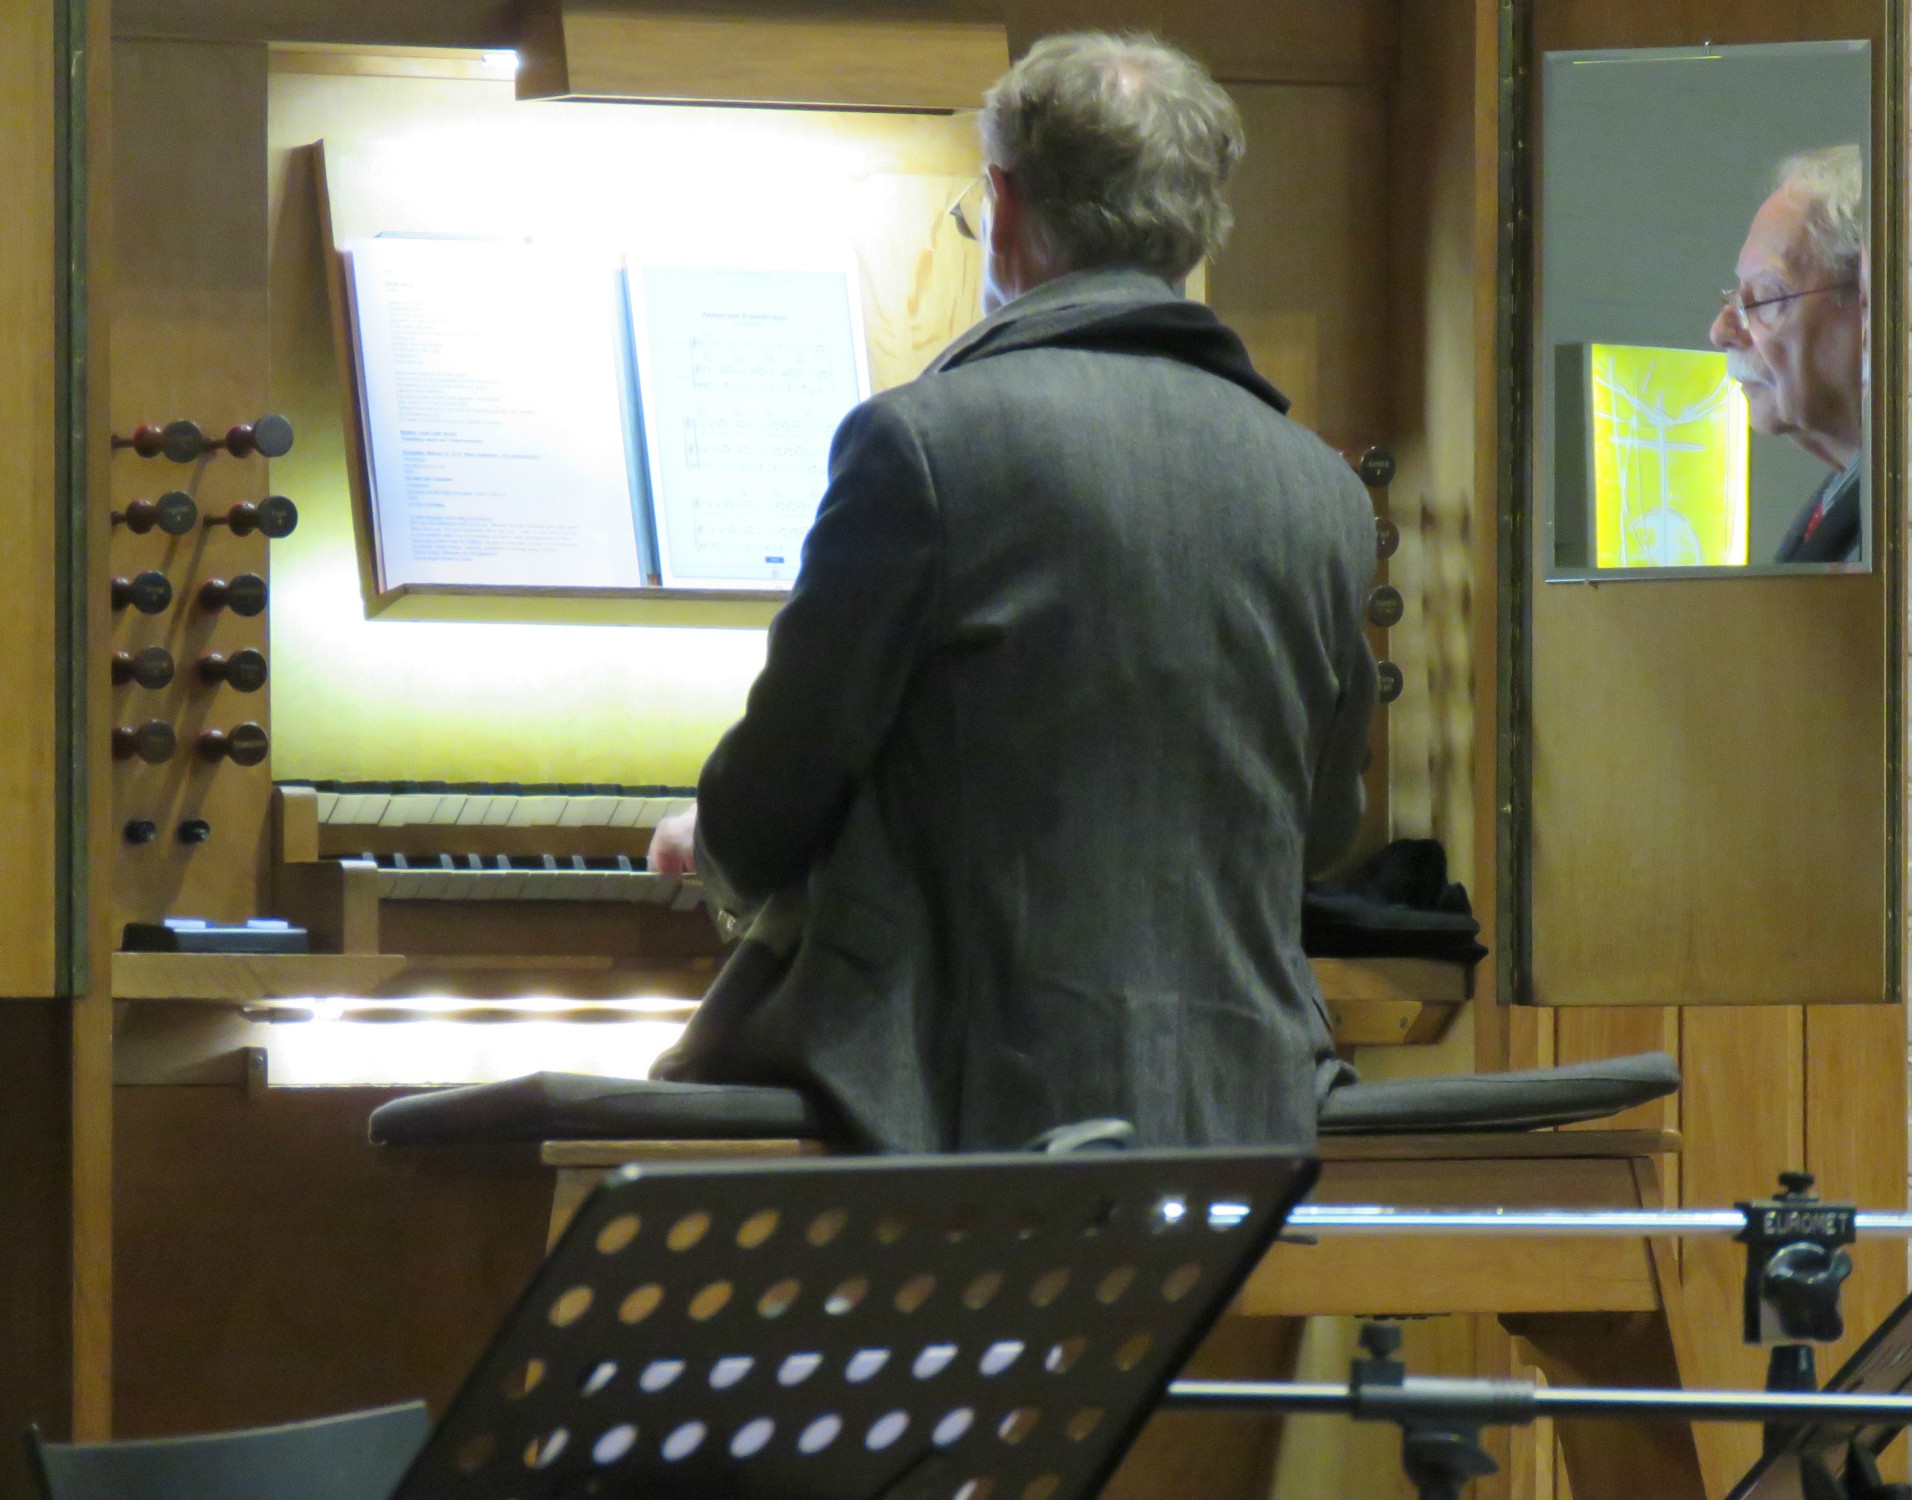 Twee vormelingen brengen samen met organist Joannes enkele Sinterklaasliedjes